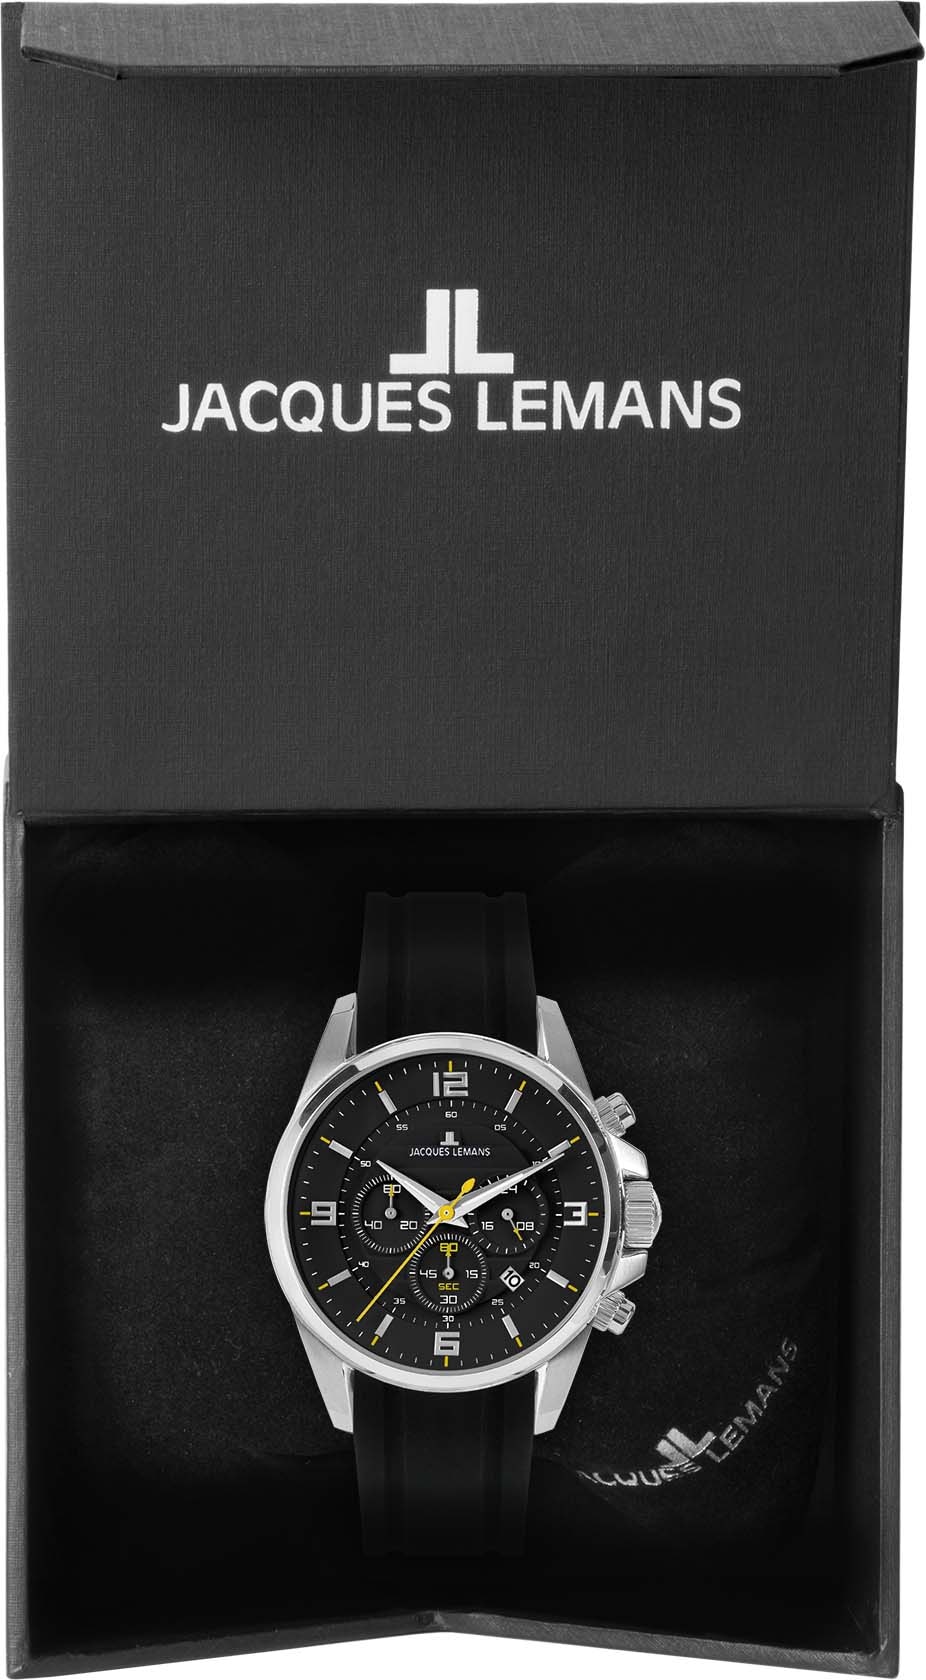 1-2118A« Chronograph Jacques »Liverpool Lemans